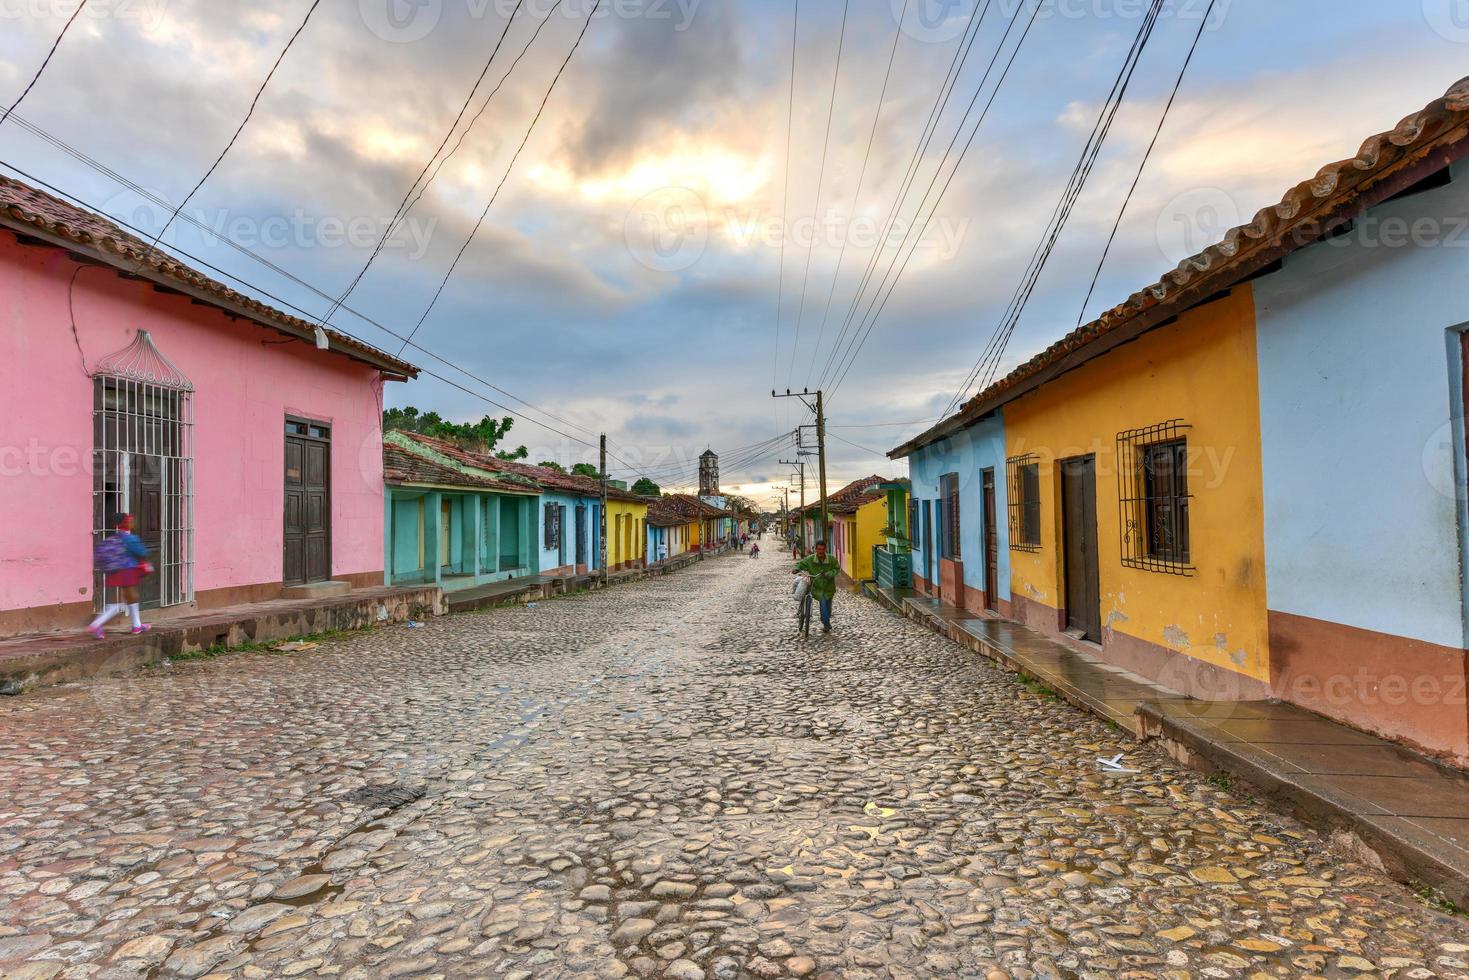 Bunte traditionelle Häuser in der Kolonialstadt Trinidad in Kuba, die zum UNESCO-Weltkulturerbe gehört. foto